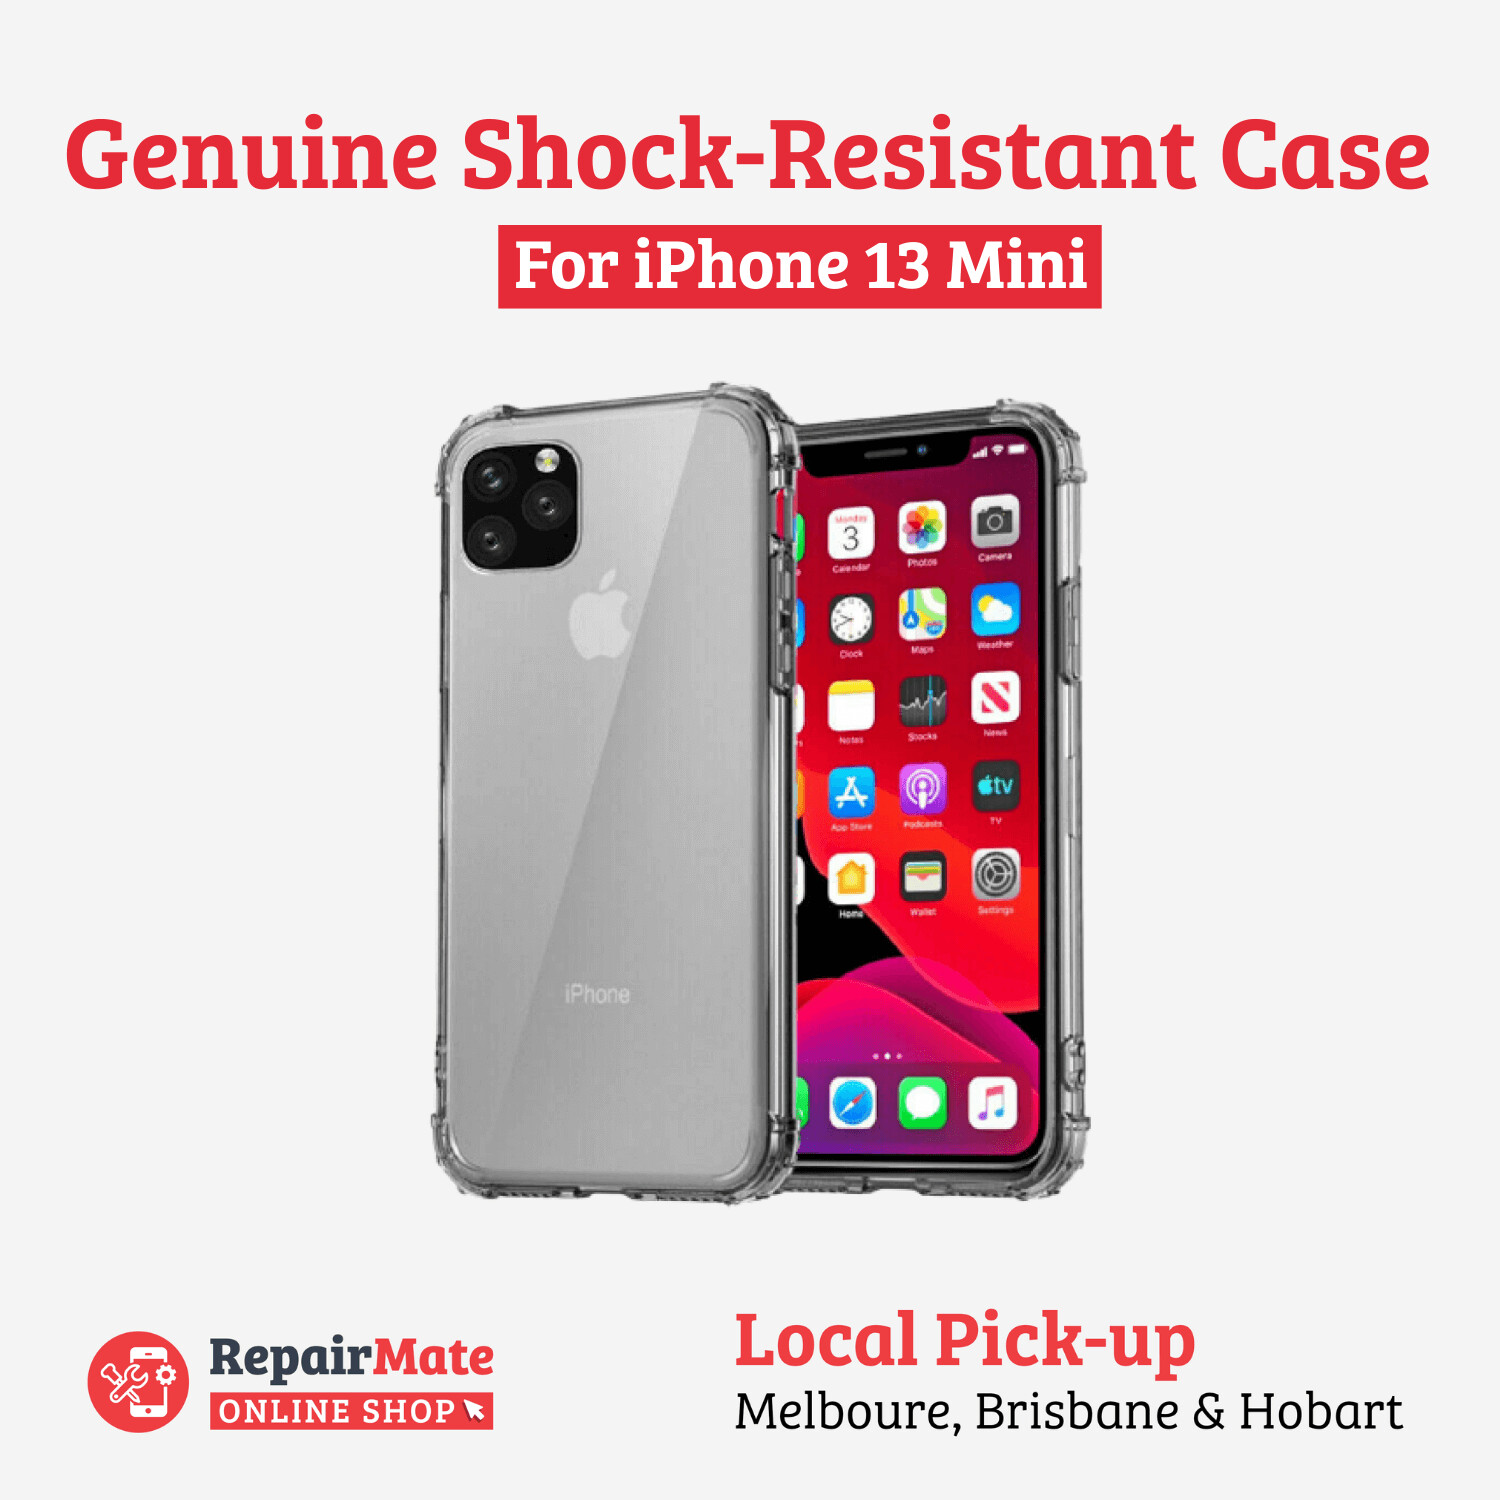 iPhone 13 Mini Genuine Shock-Resistant Case